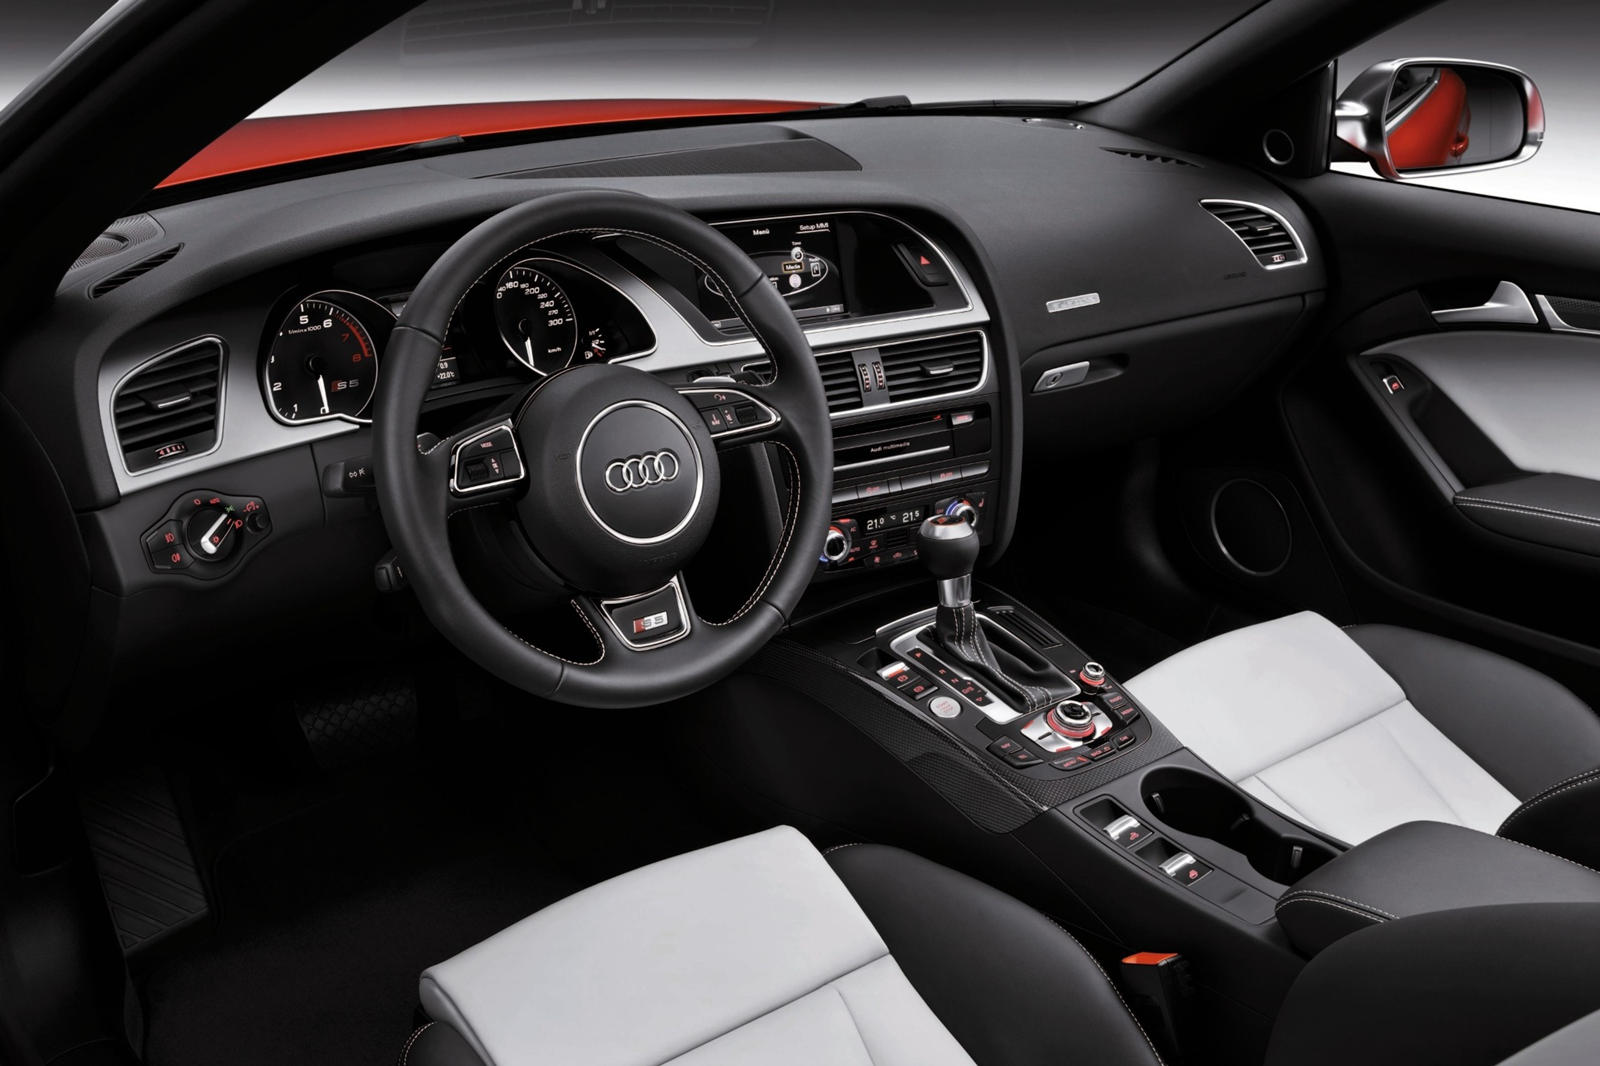 2016 Audi S5 Convertible Dashboard